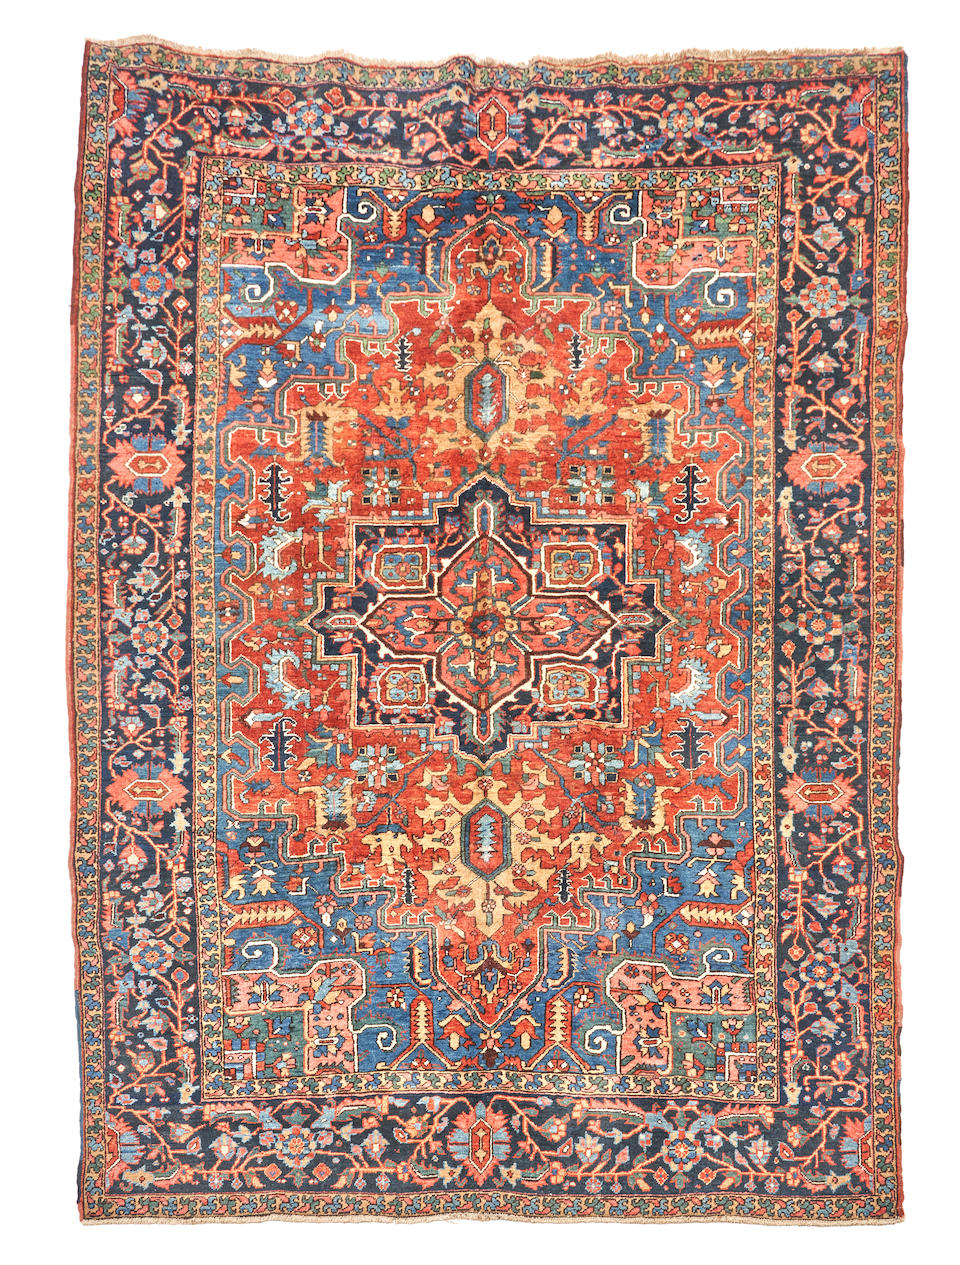 Heriz Carpet Iran 7 ft. 6 in. x 10 ft. 4 in. - Image 2 of 4